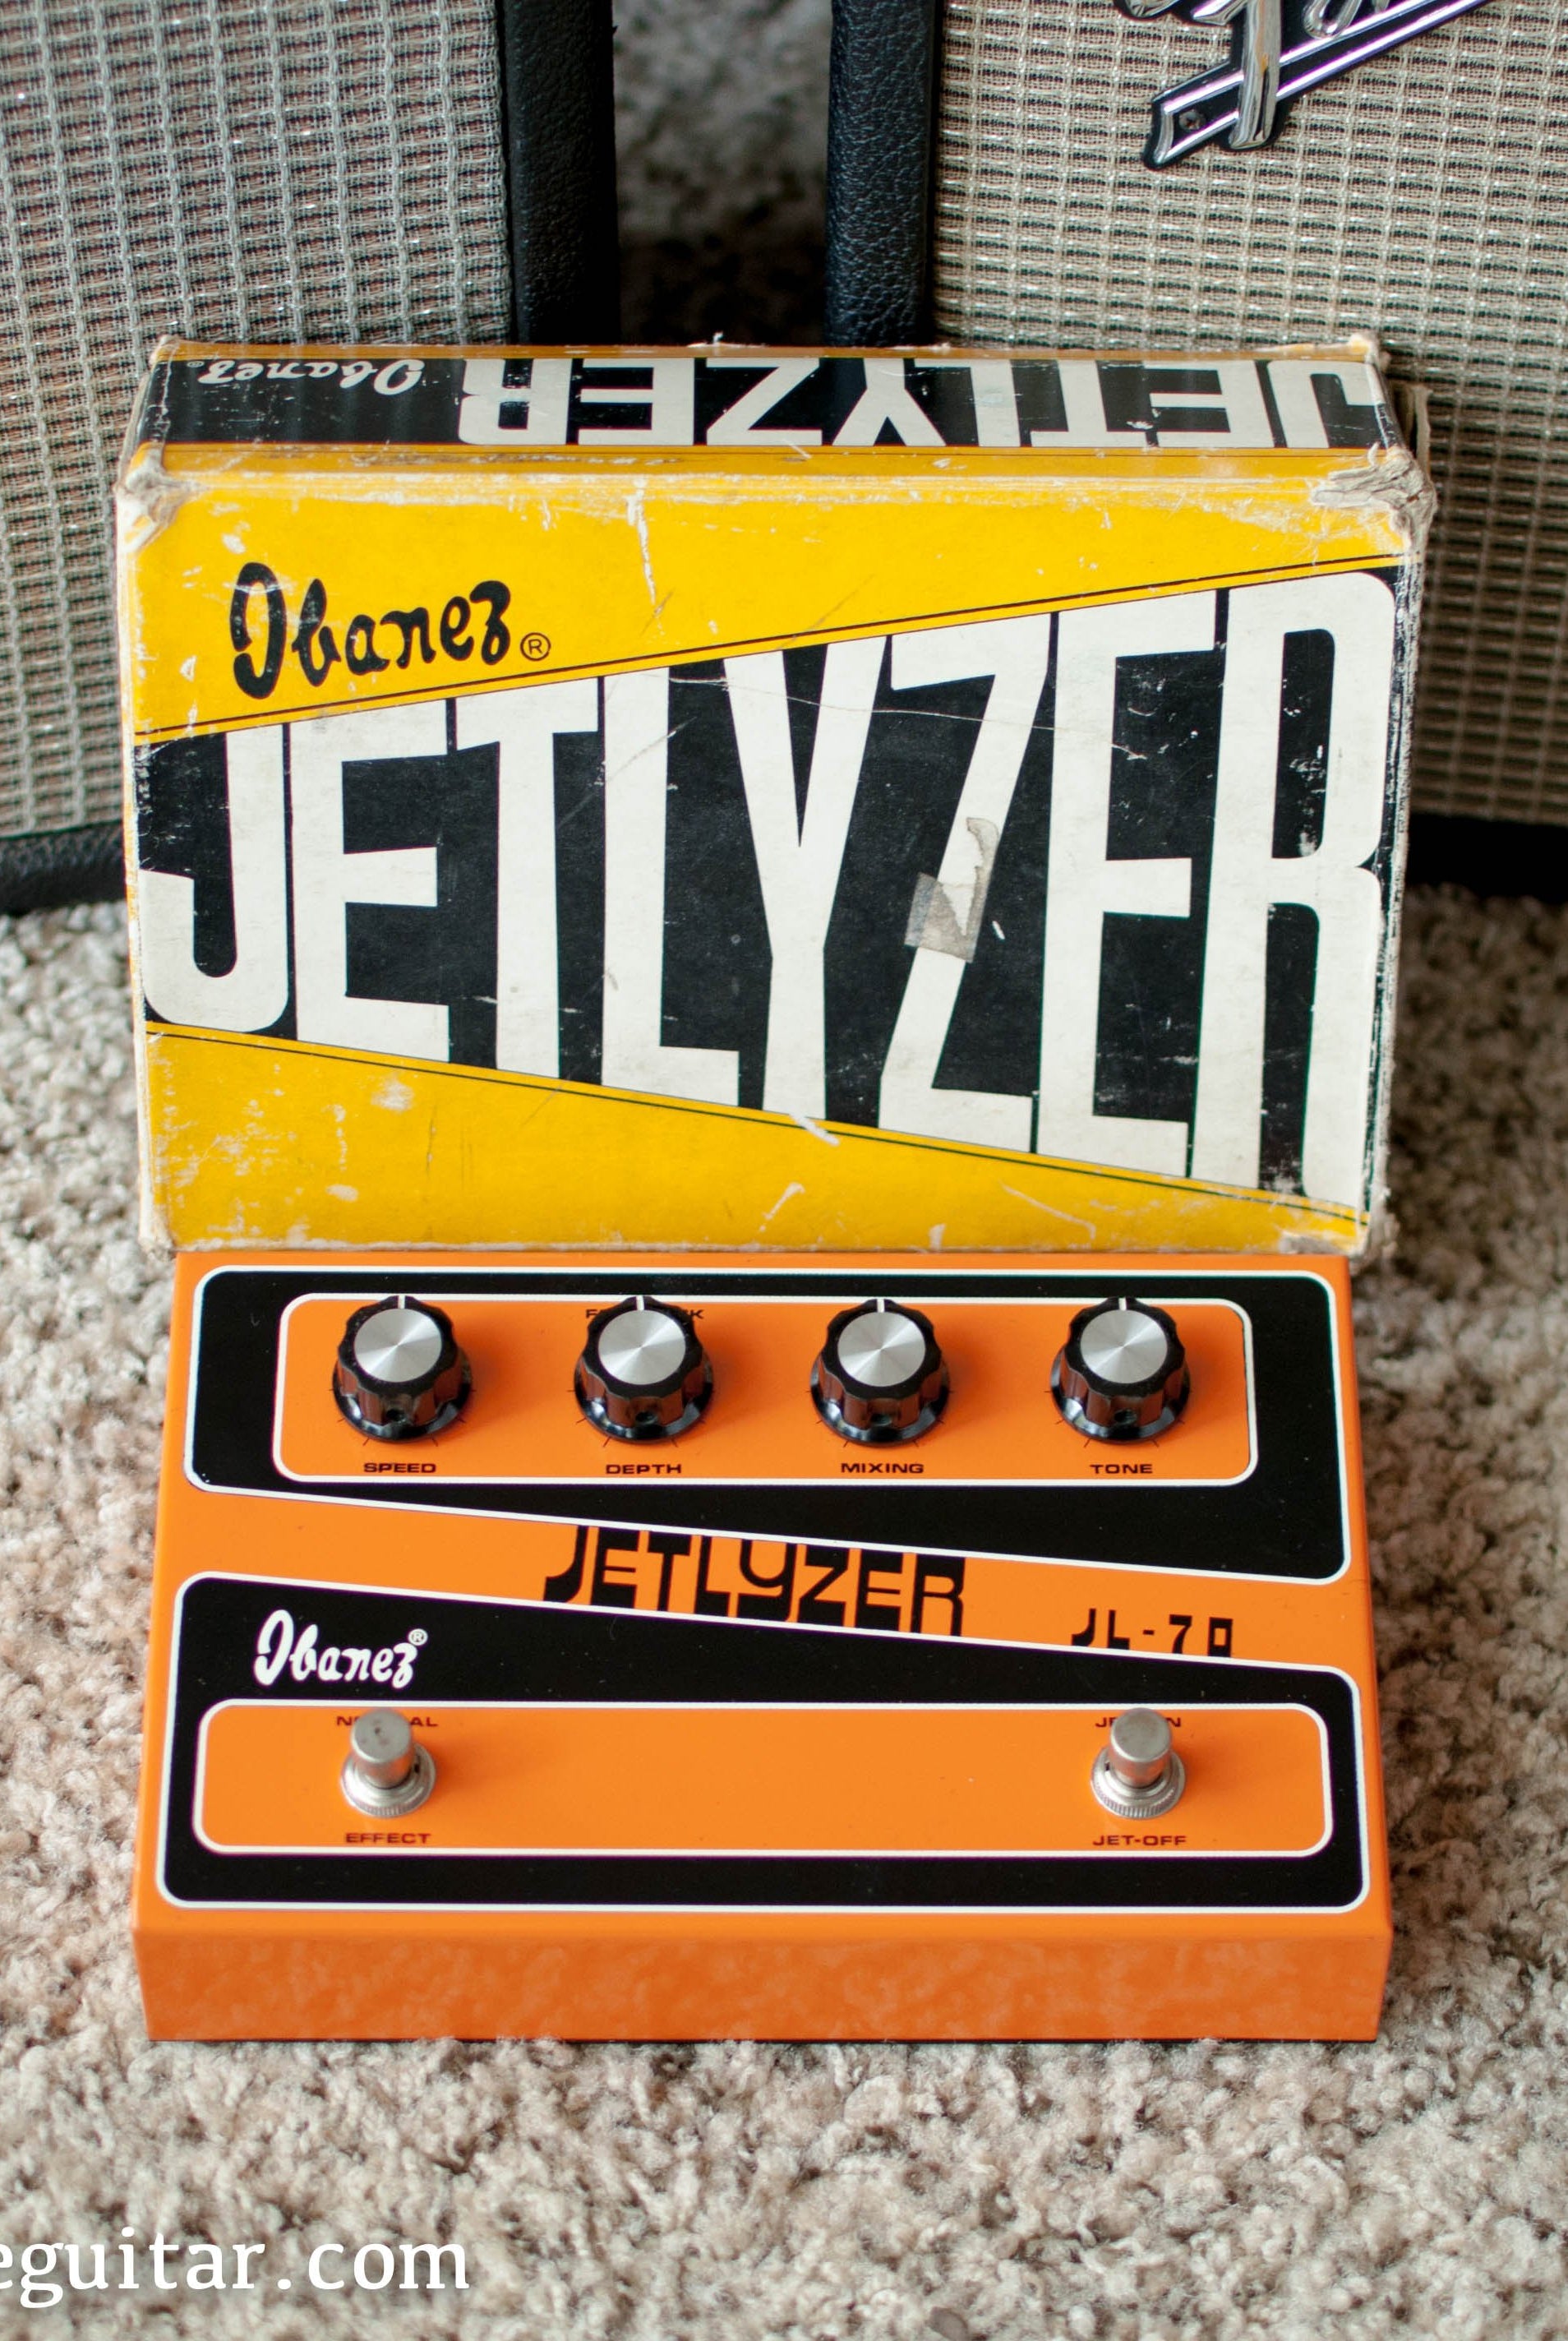 Vintage Ibanez JL-70 Jetlyzer Pedal